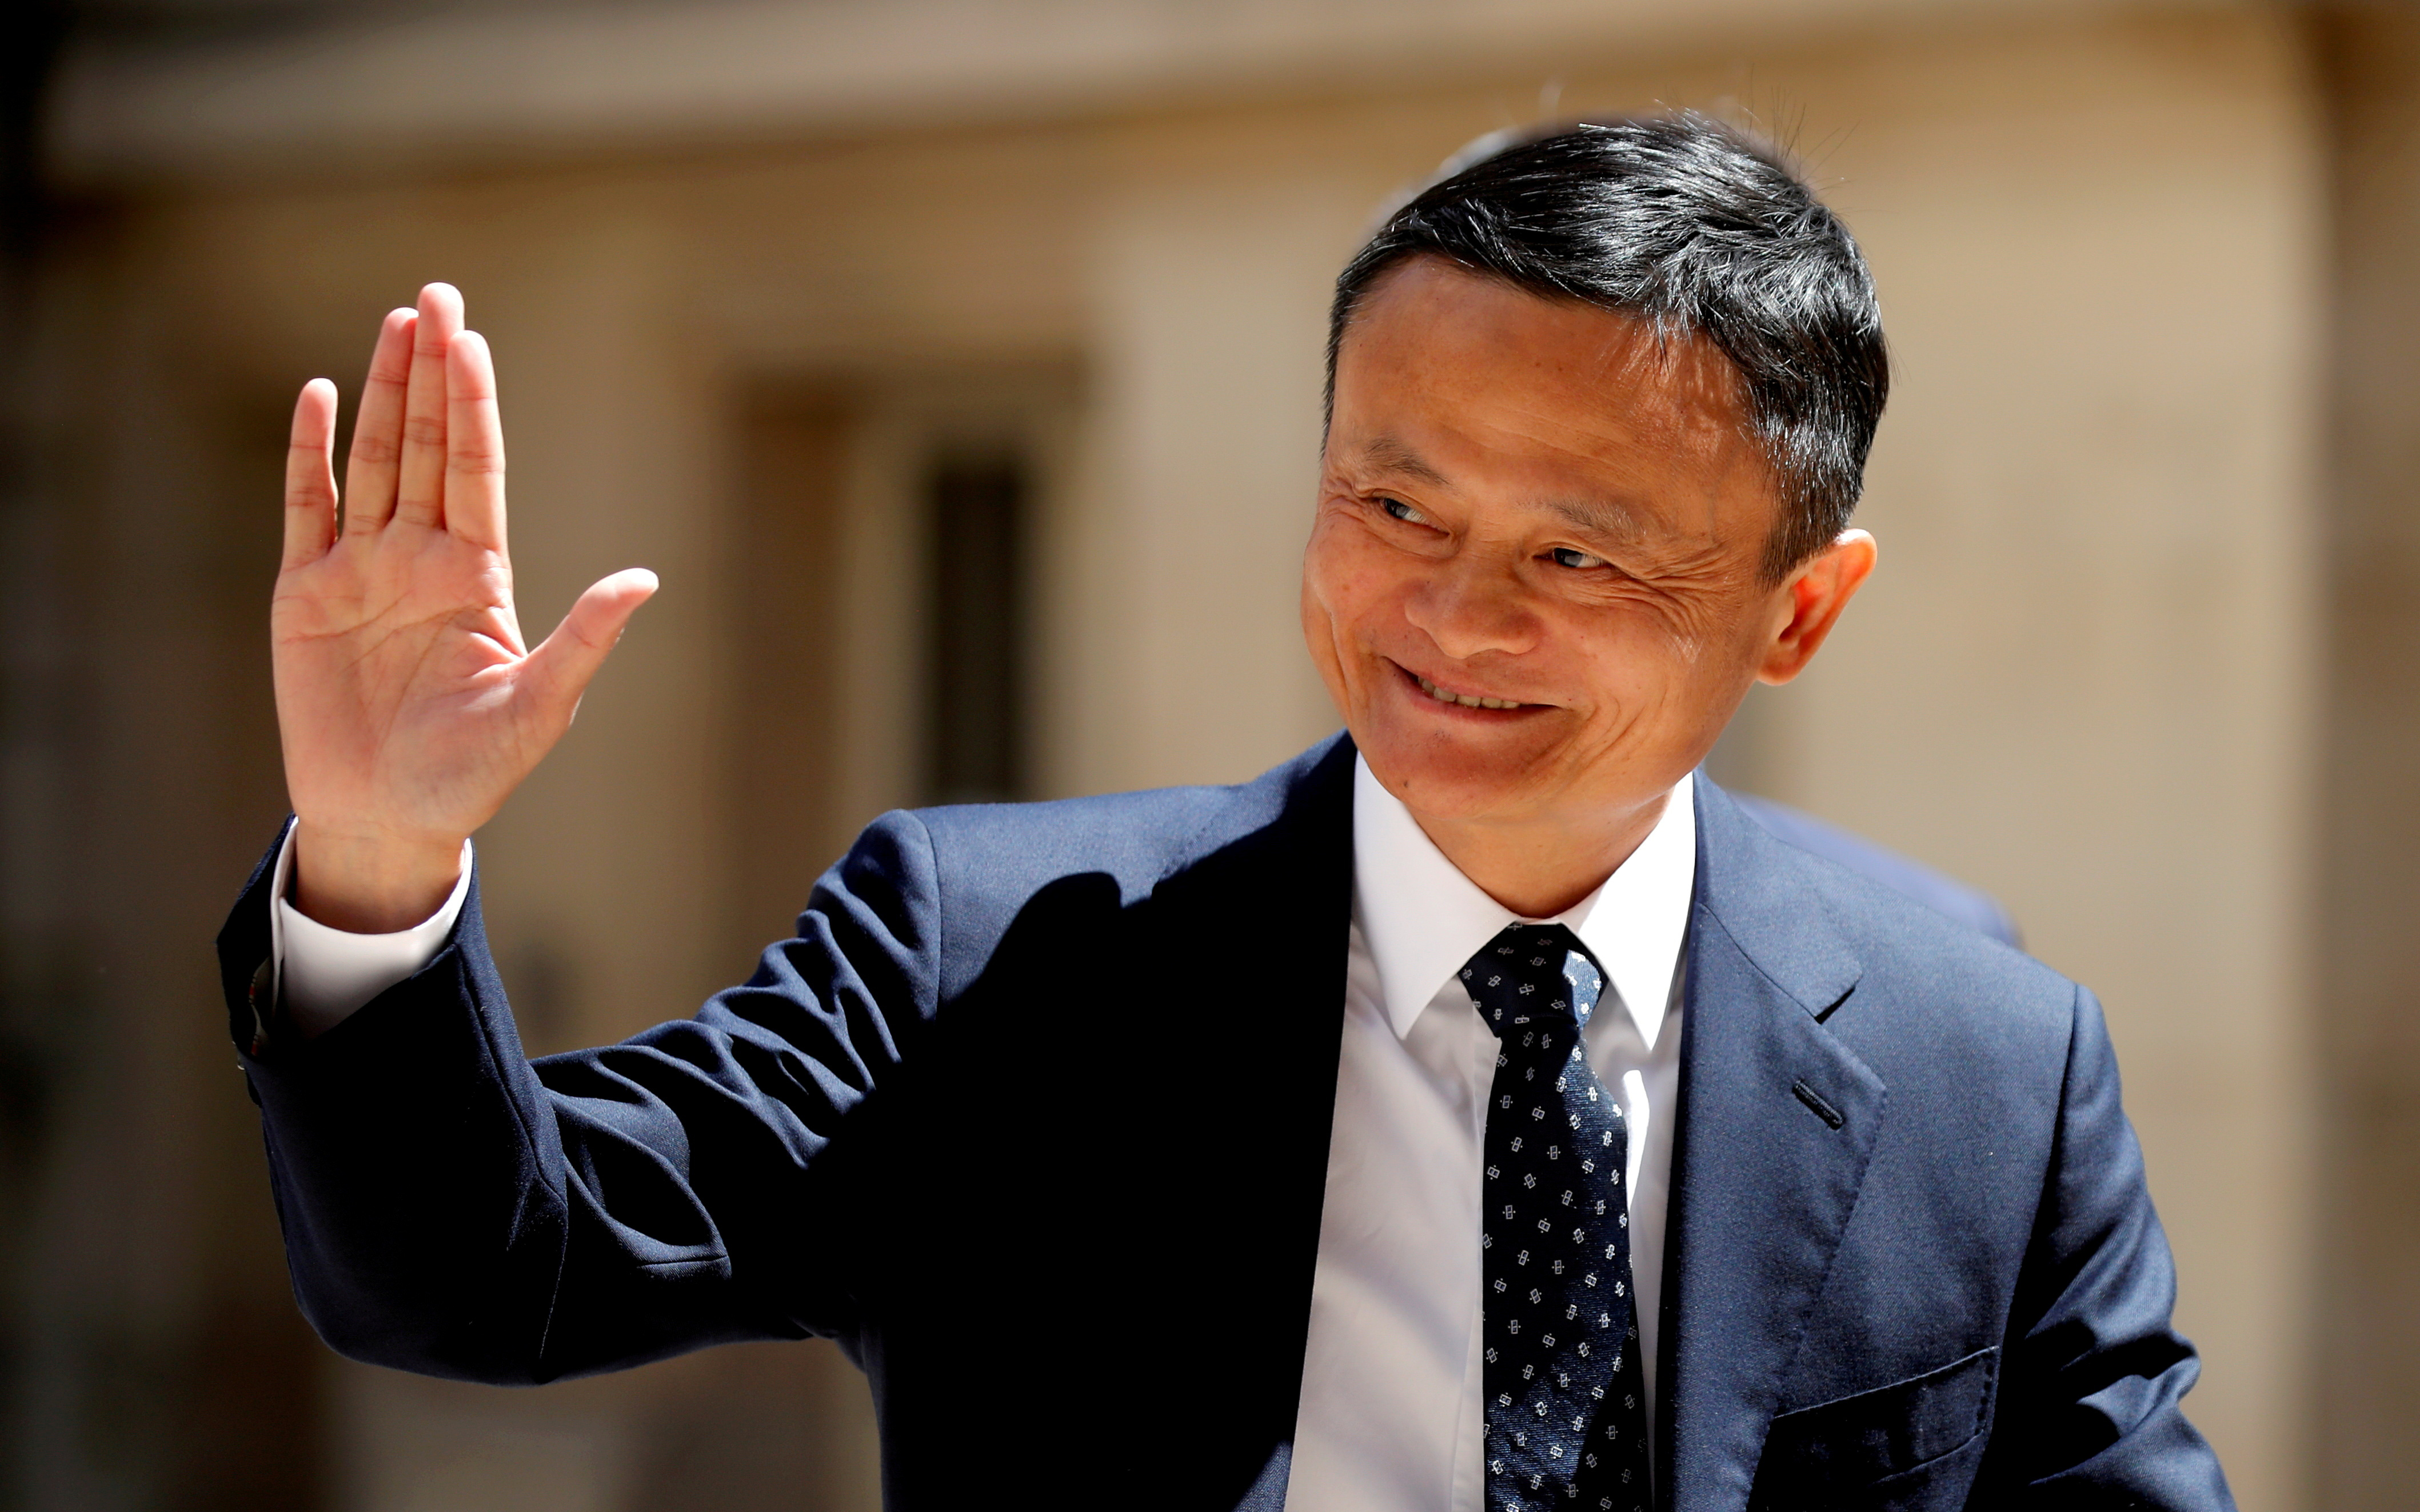 Tỉ phú Jack Ma rút quyền kiểm soát Ant Group